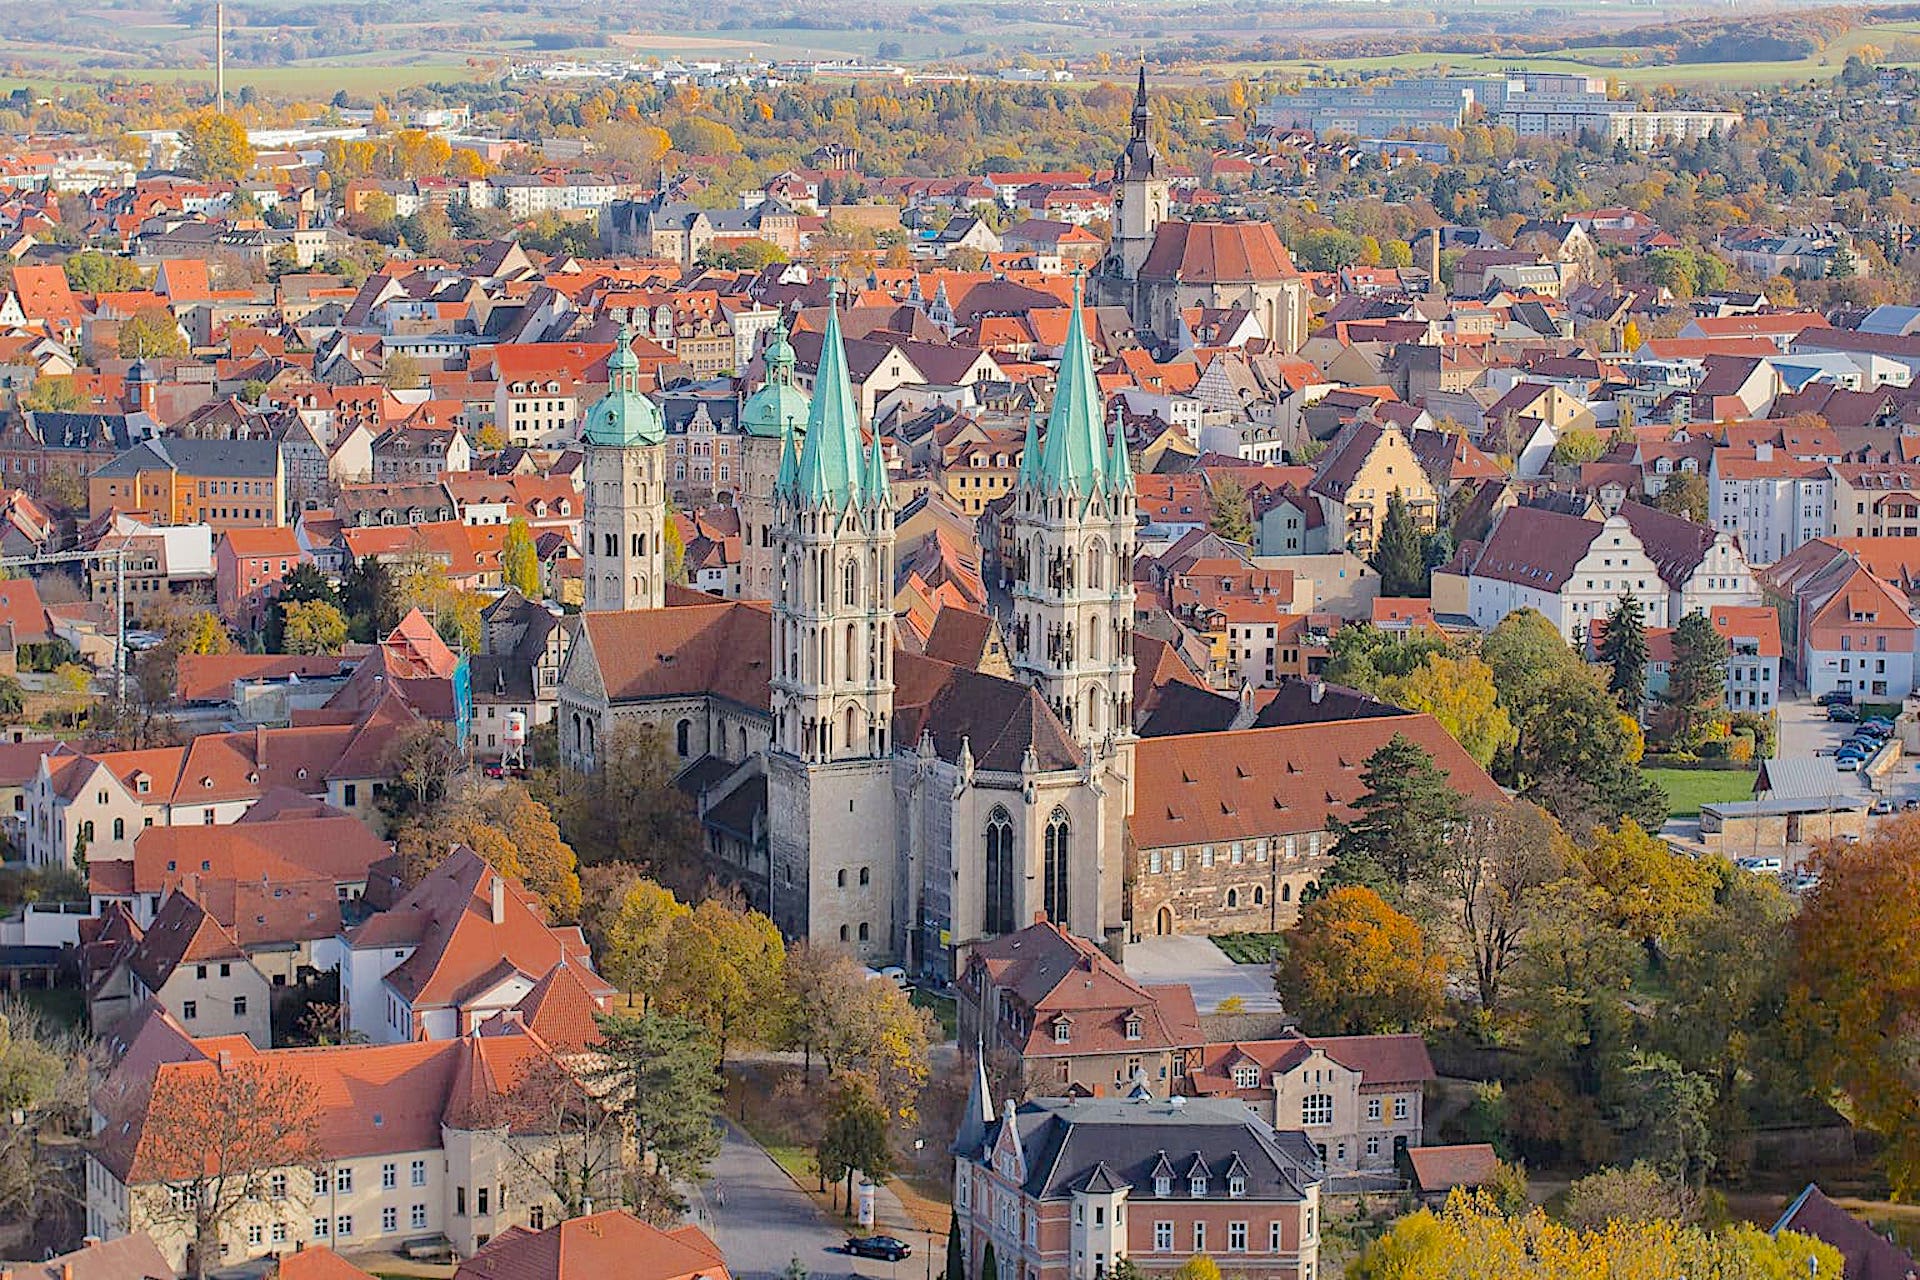 Naumburg (Saxony-Anhalt) 